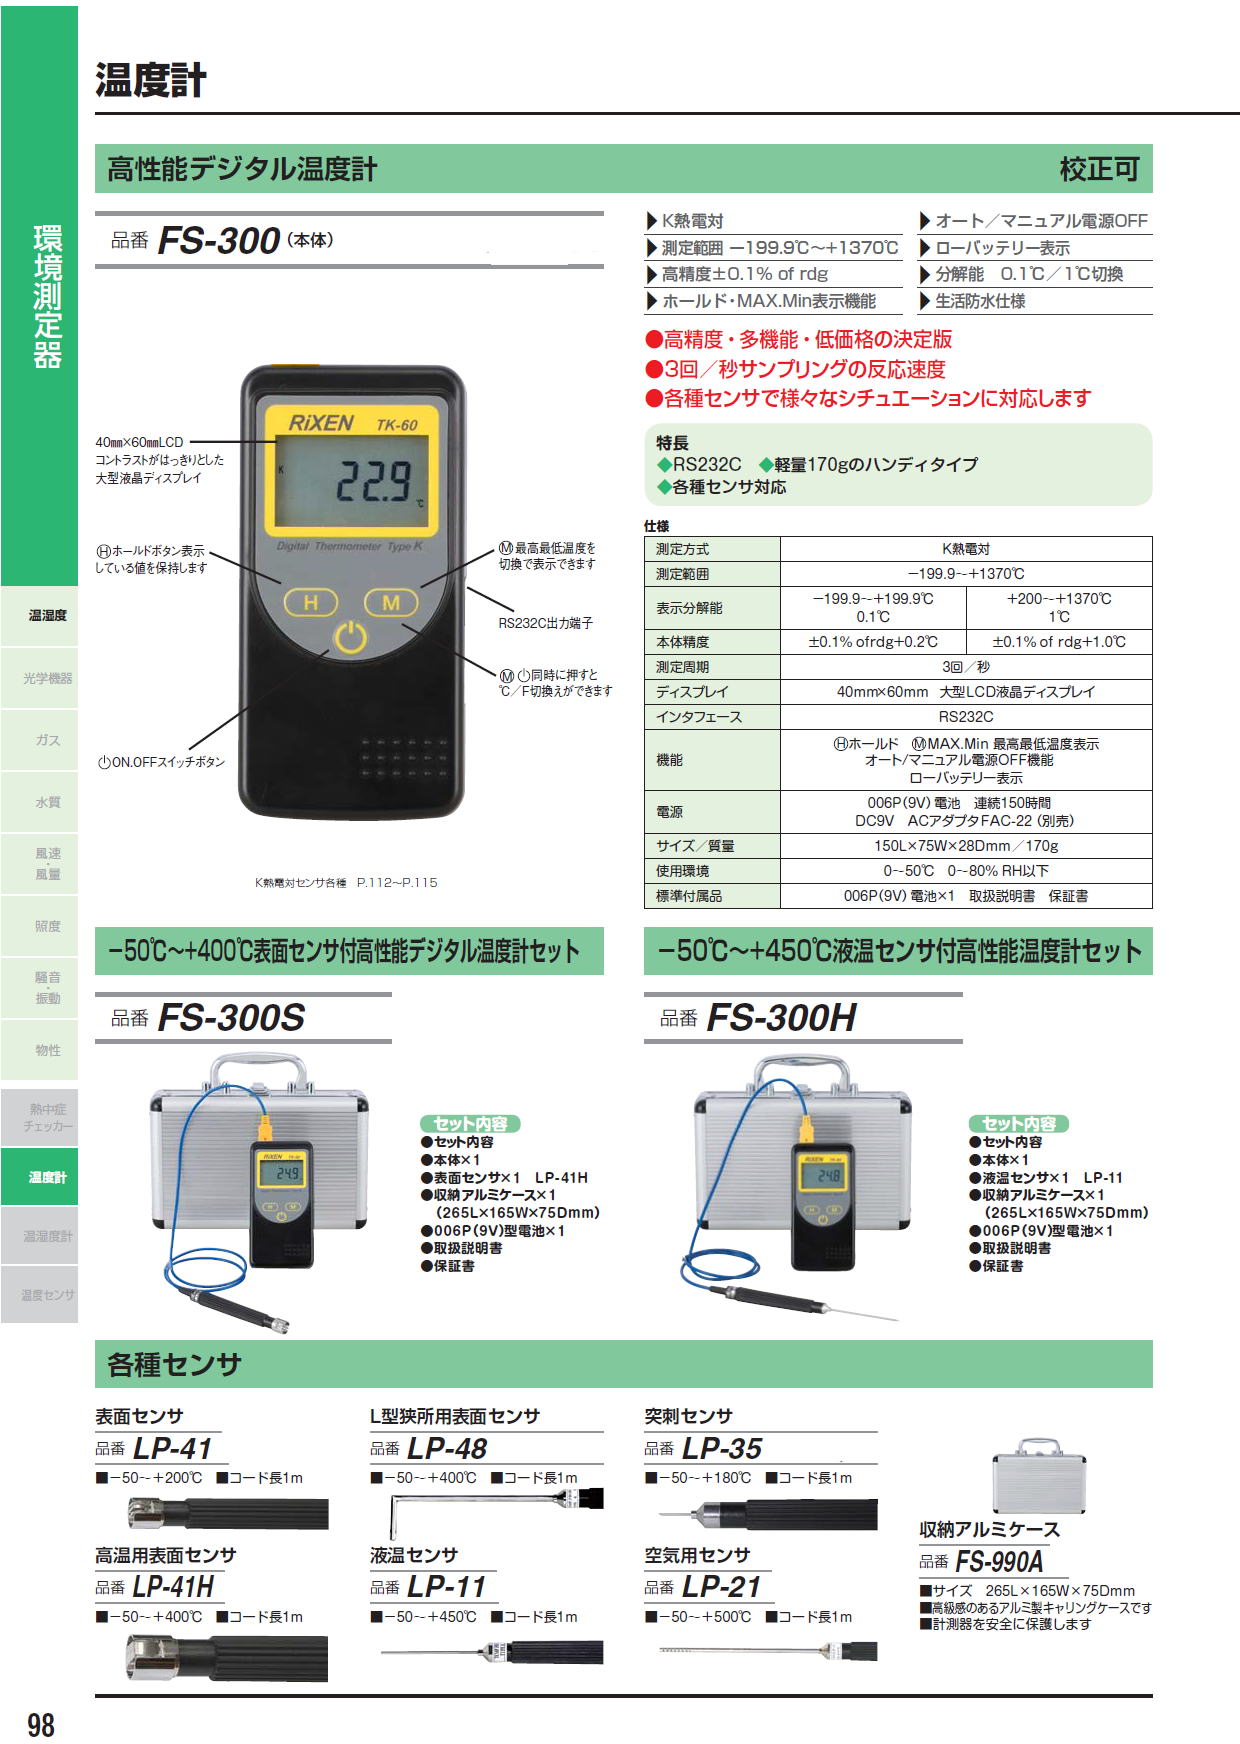 株式会社FUSO 高性能デジタル温度計 FS-300（本体） / －50℃～+400